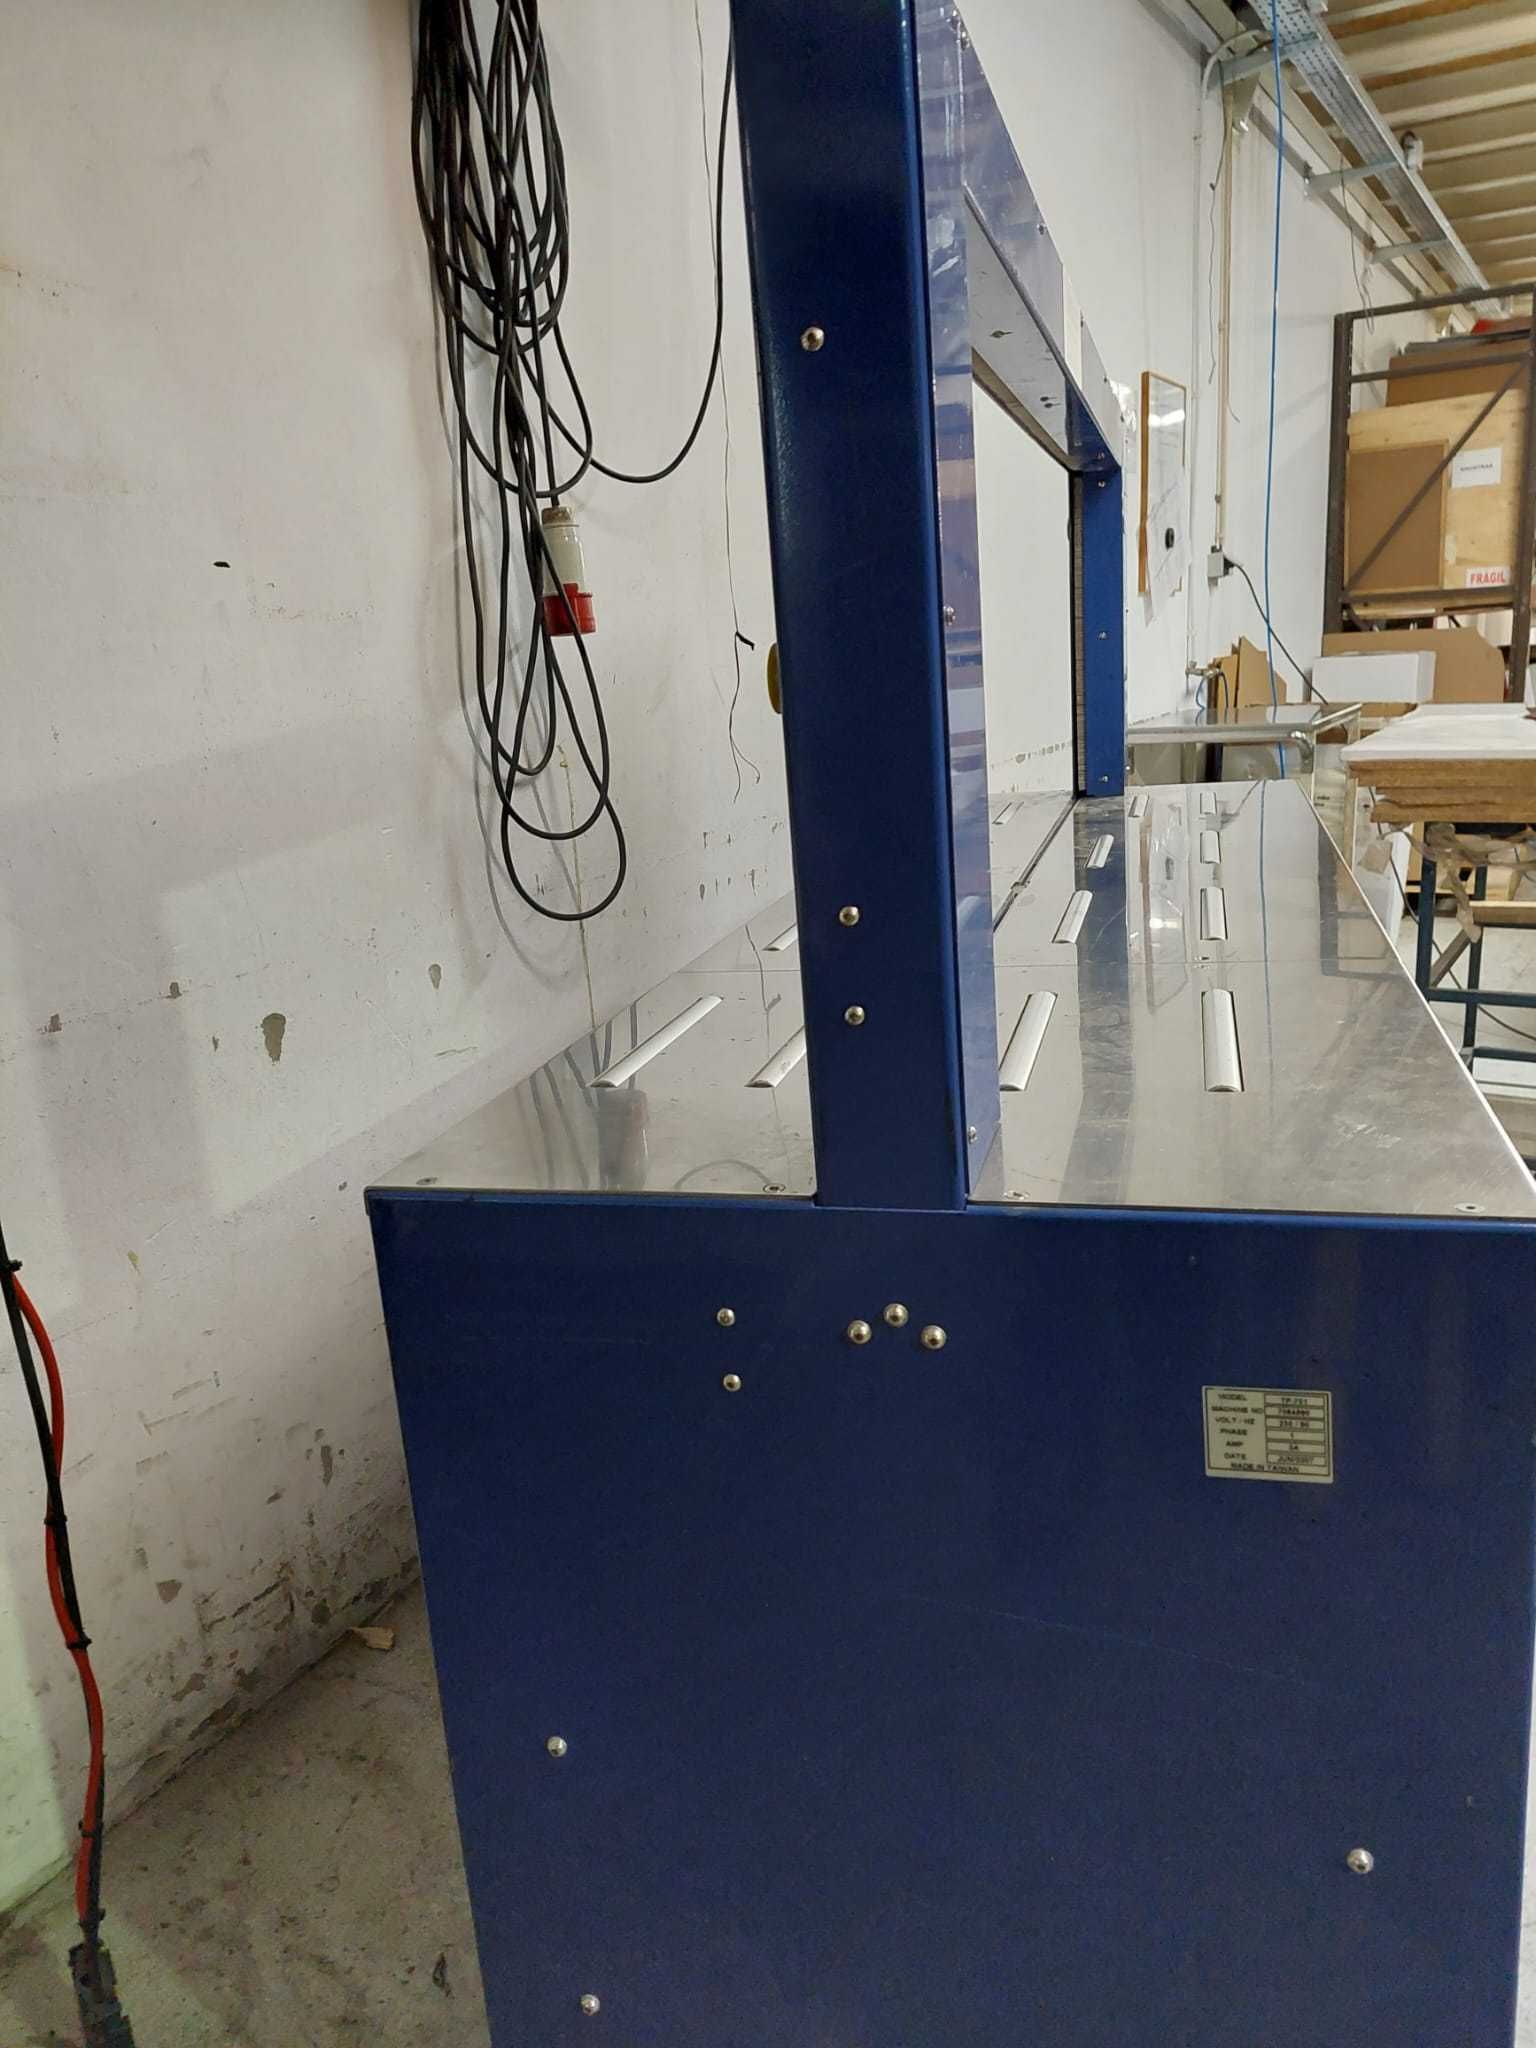 maquina automática de cintar com fita de 5mm